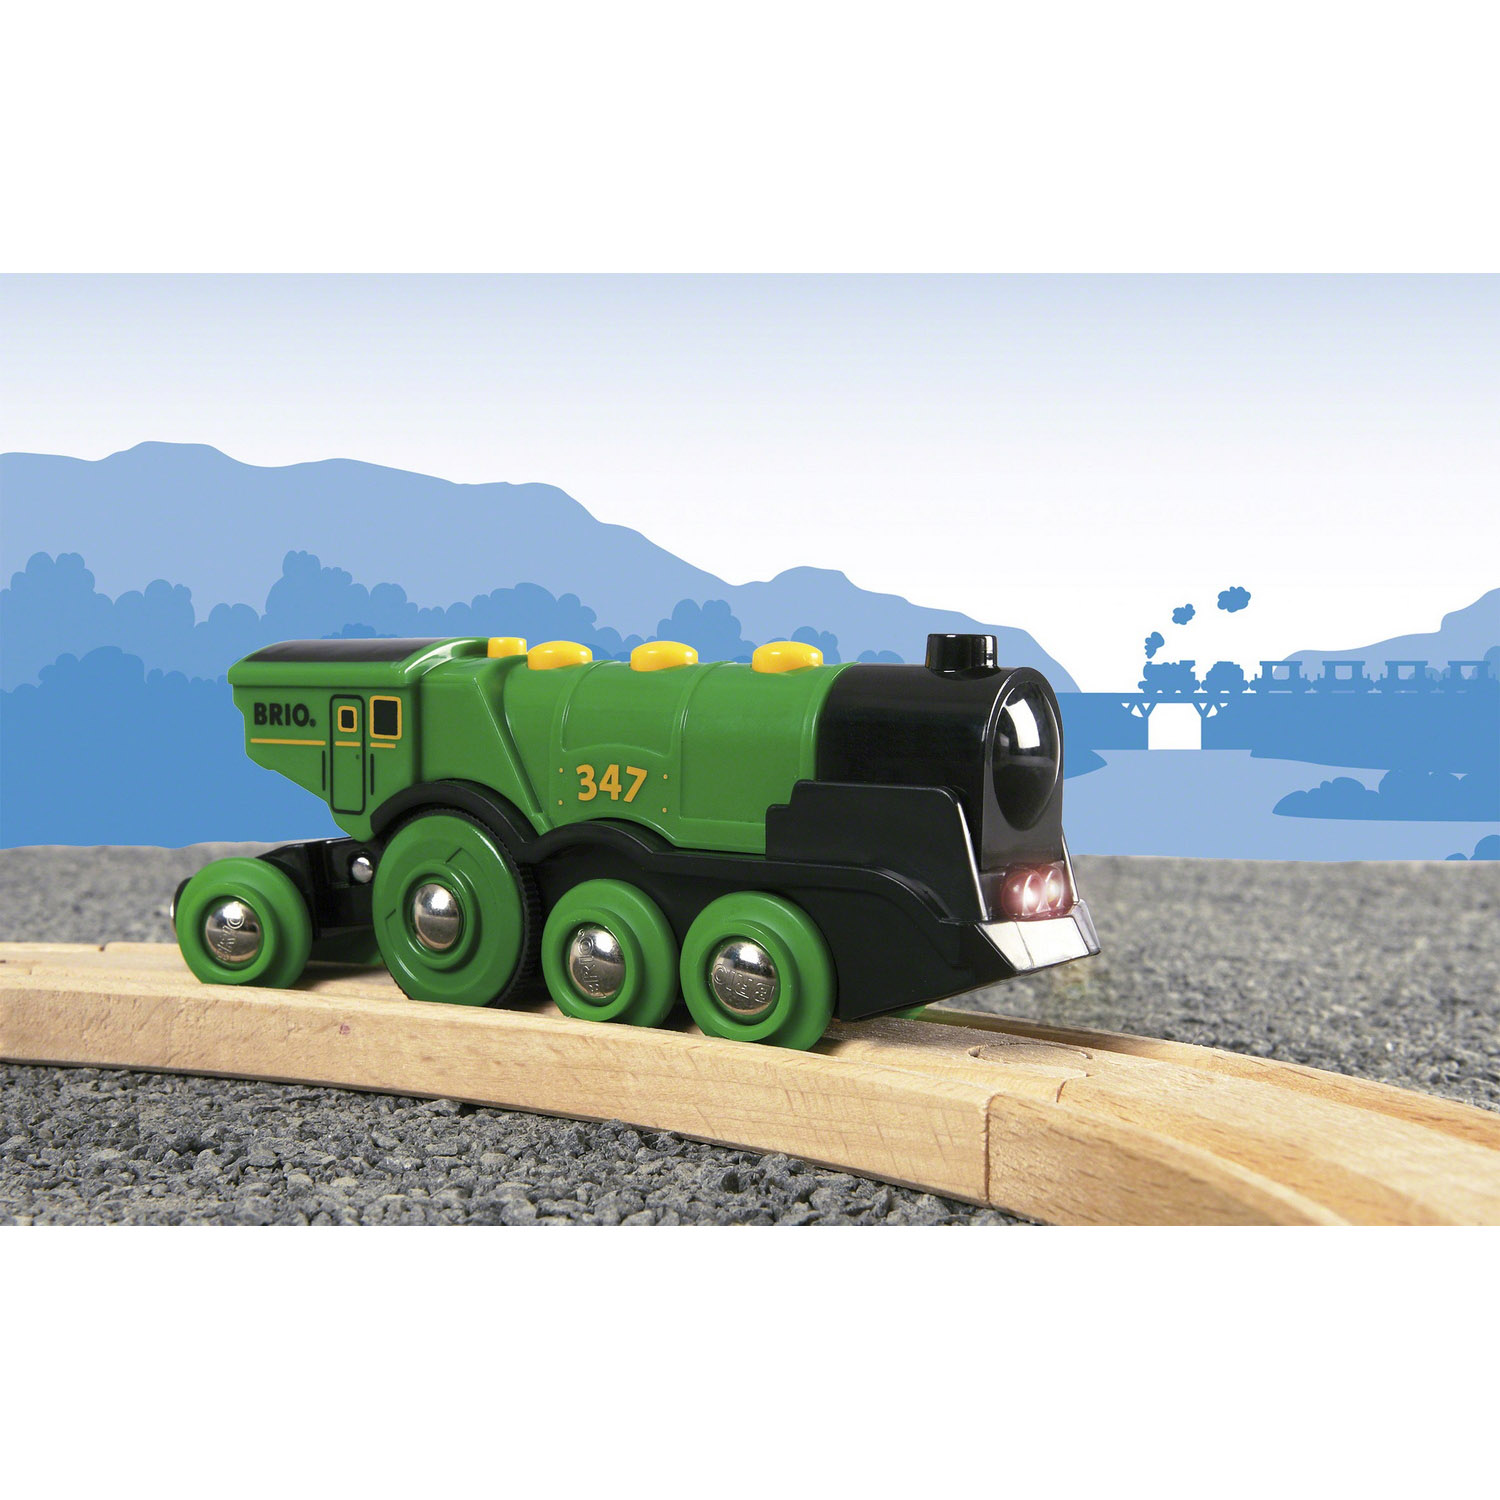 Локомотив BRIO поезд зеленый со световыми и звуковыми эффектами - фото 2